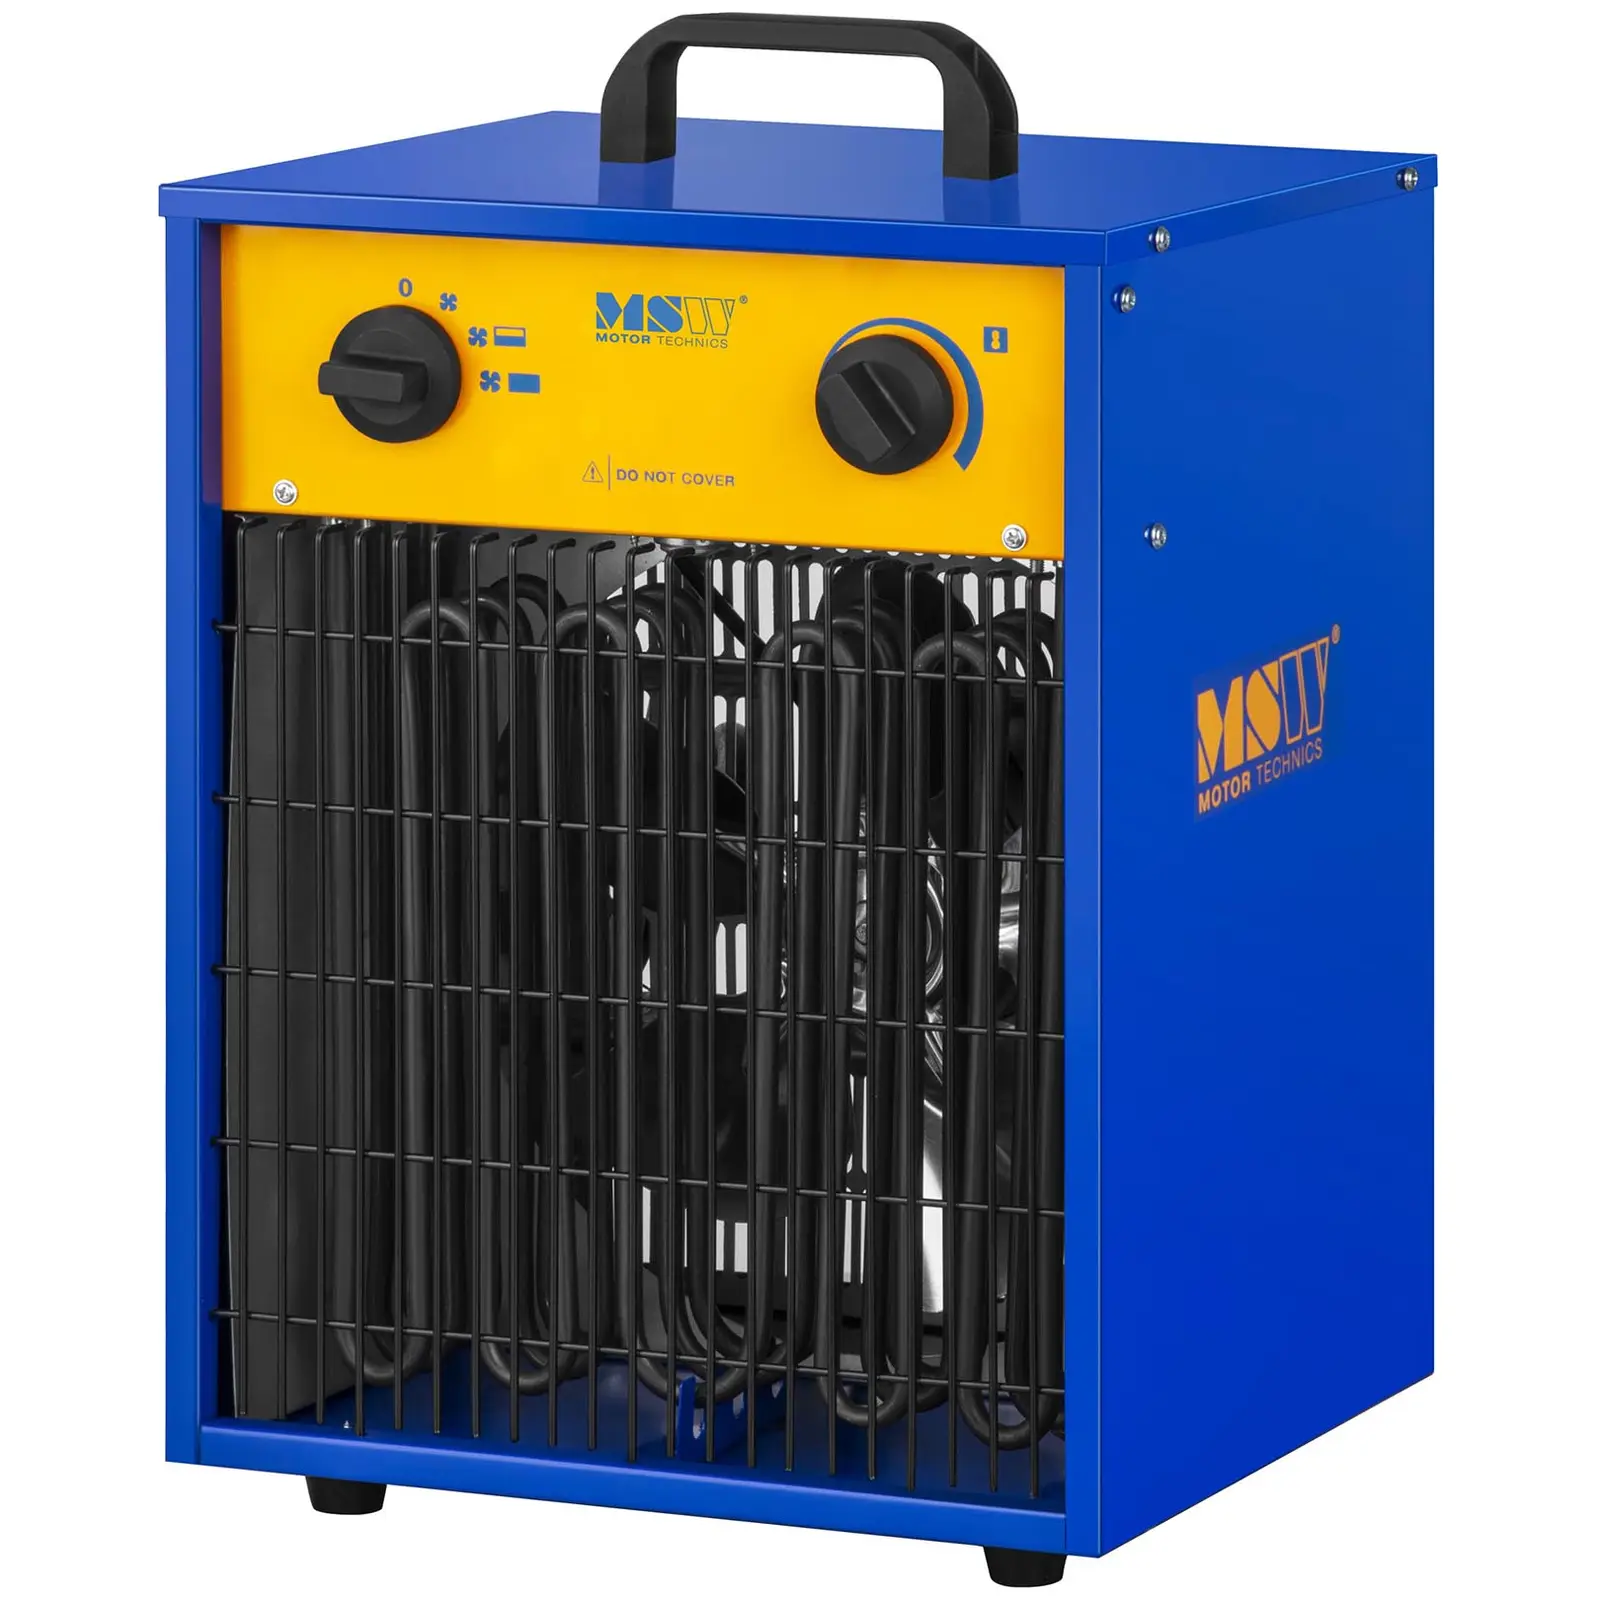 Generatore di aria elettrico con funzione di raffreddamento - da 0 a 85 °C - 9.000 W